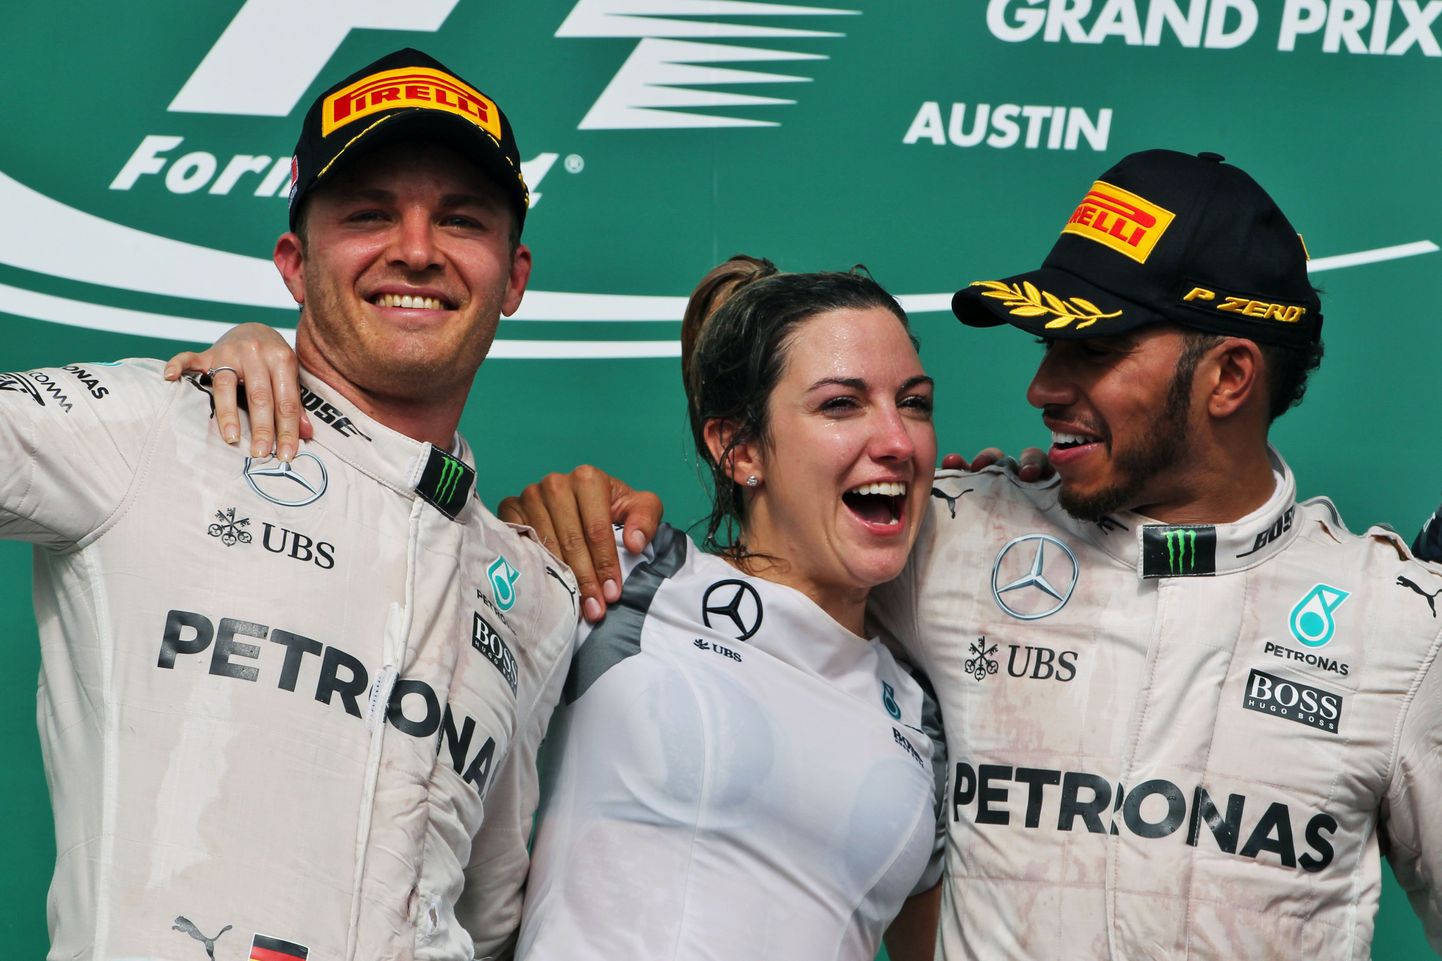 Nico Rosberg (vasakul) võis Austini etapi teise koha järel poodimil rõõmustada koos tiimi esindajana karika järel käinud Victoria Vowlesiga ning etapivõidu teeninud Lewis Hamiltoniga.